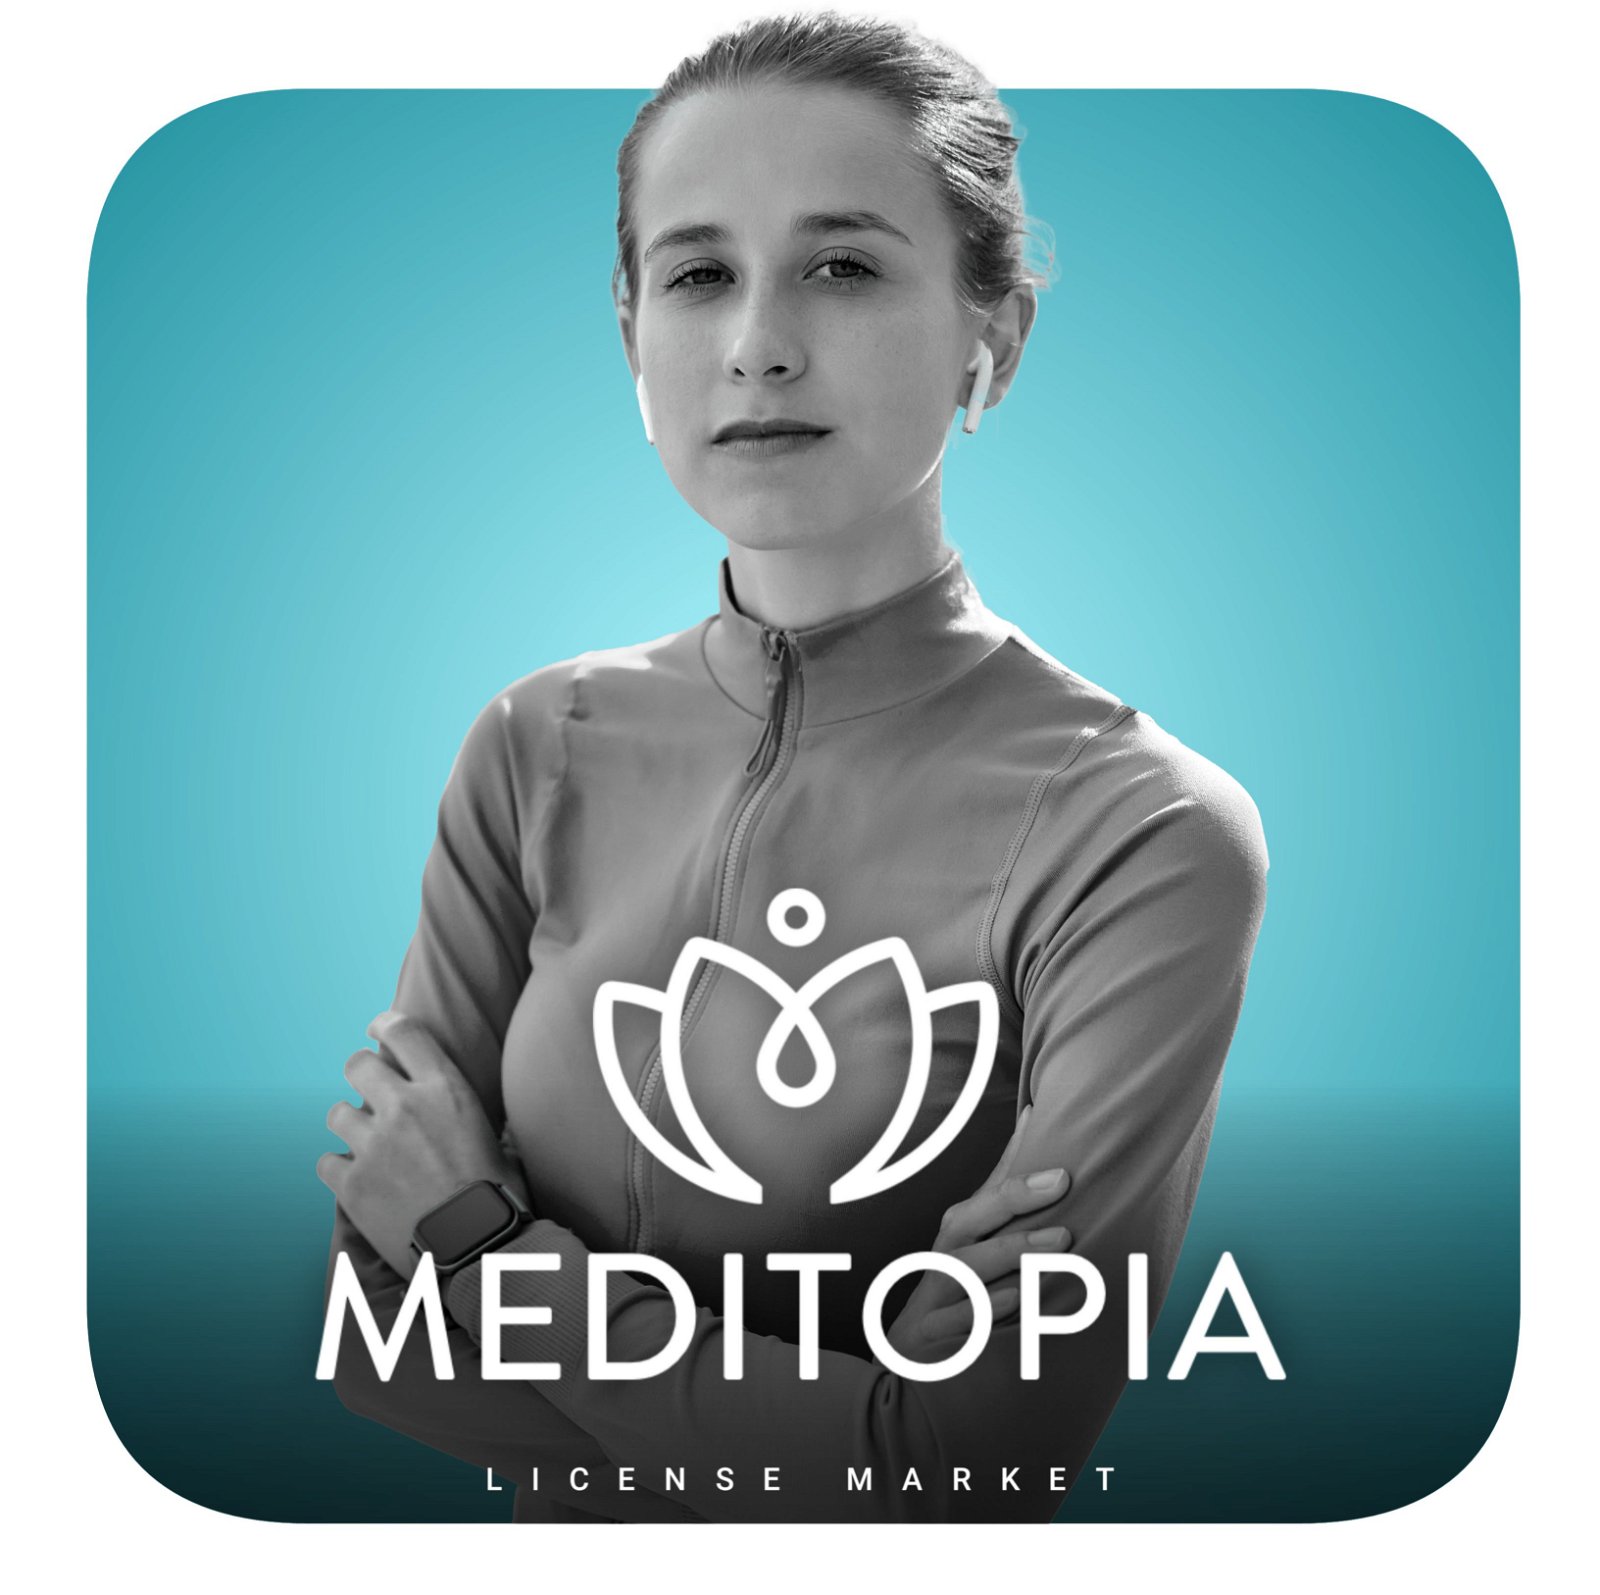 خرید اشتراک Meditopia مدیتوپیا